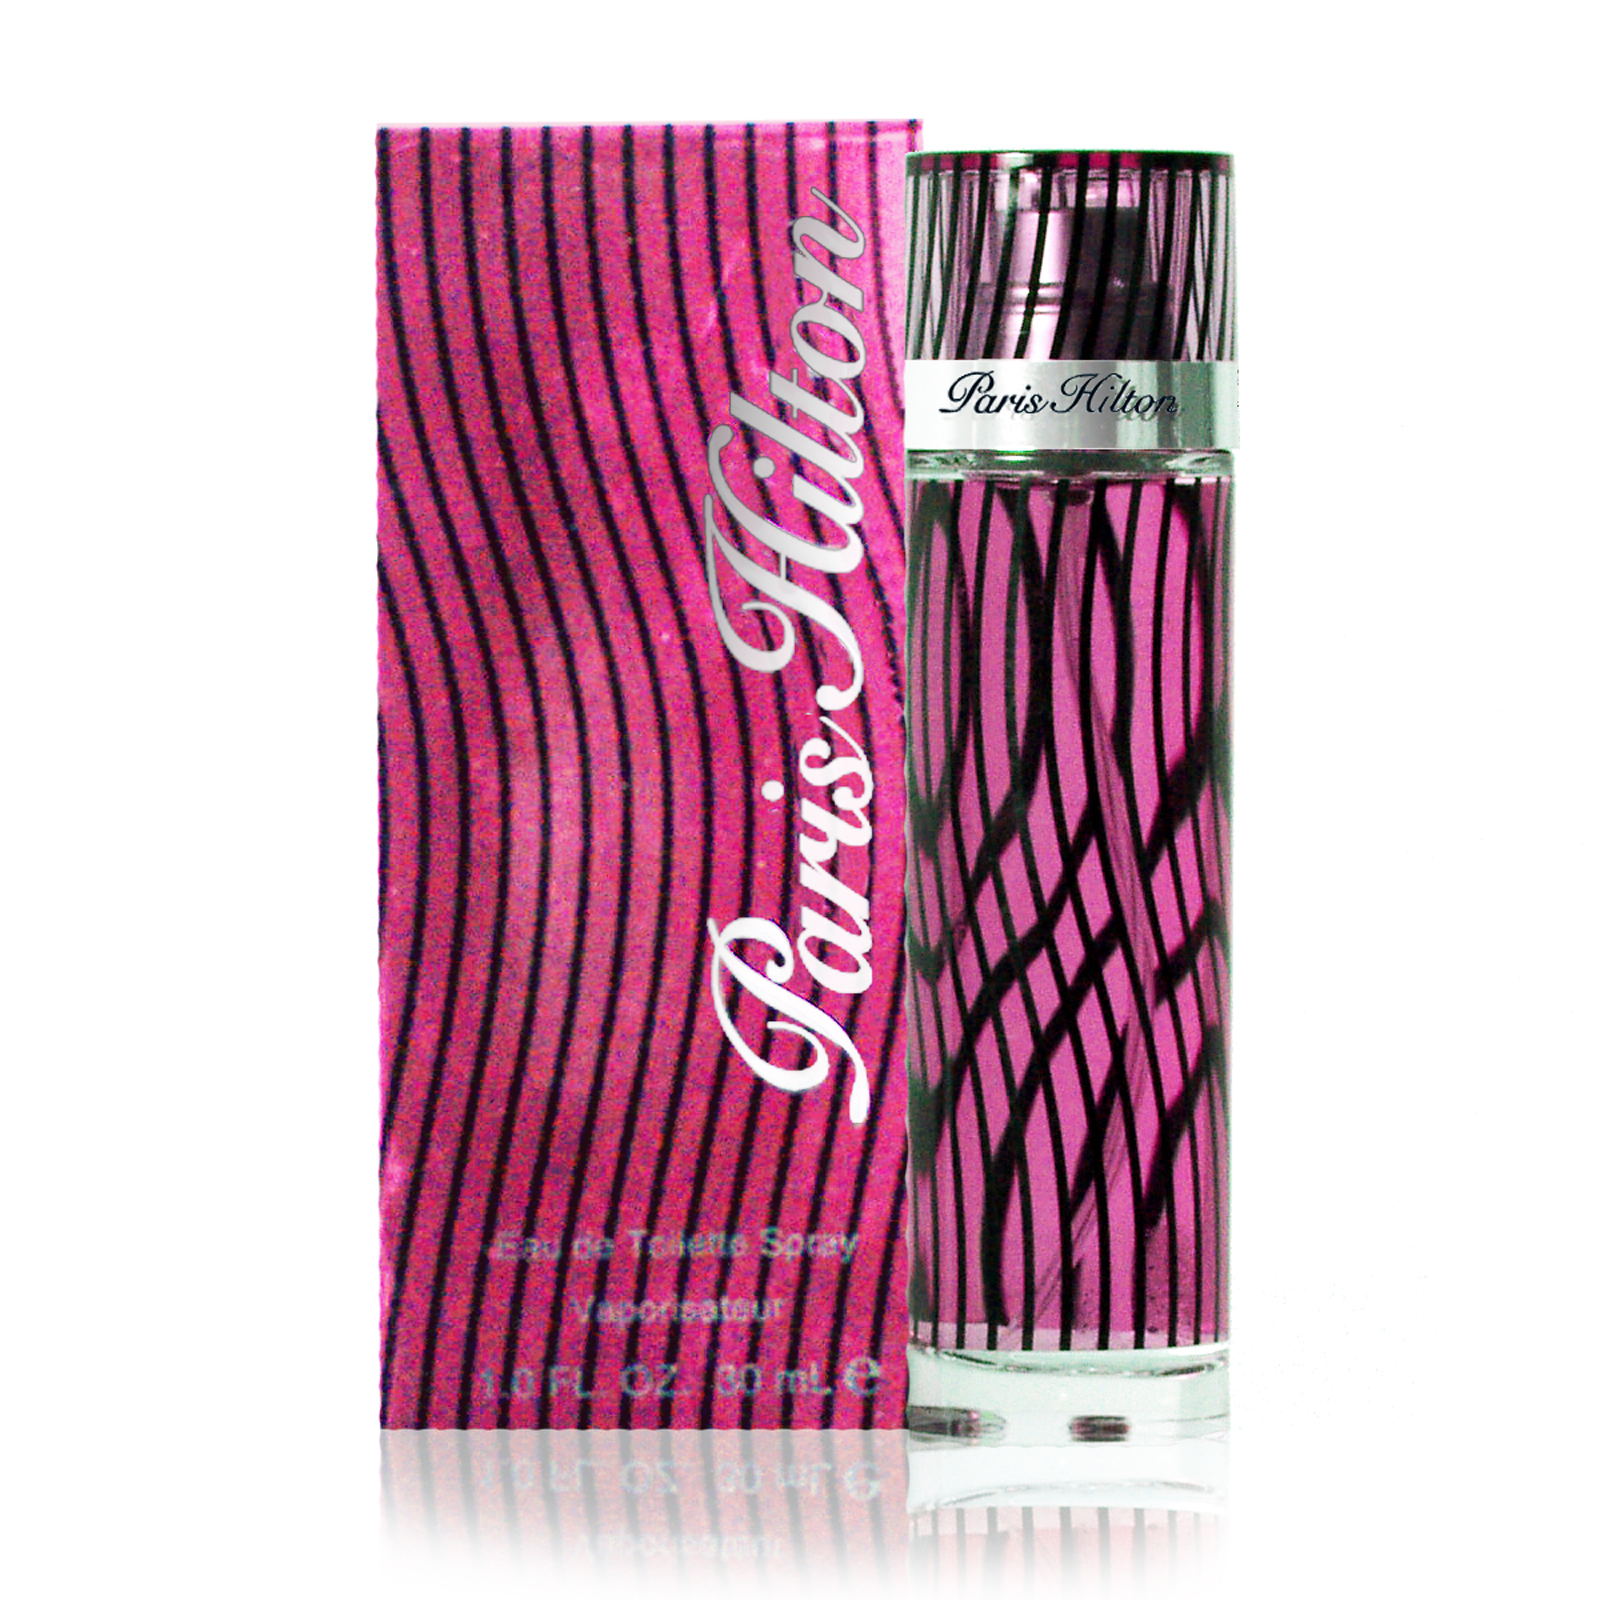 Paris Hilton For Women 1 oz Eau de Parfum Spray By